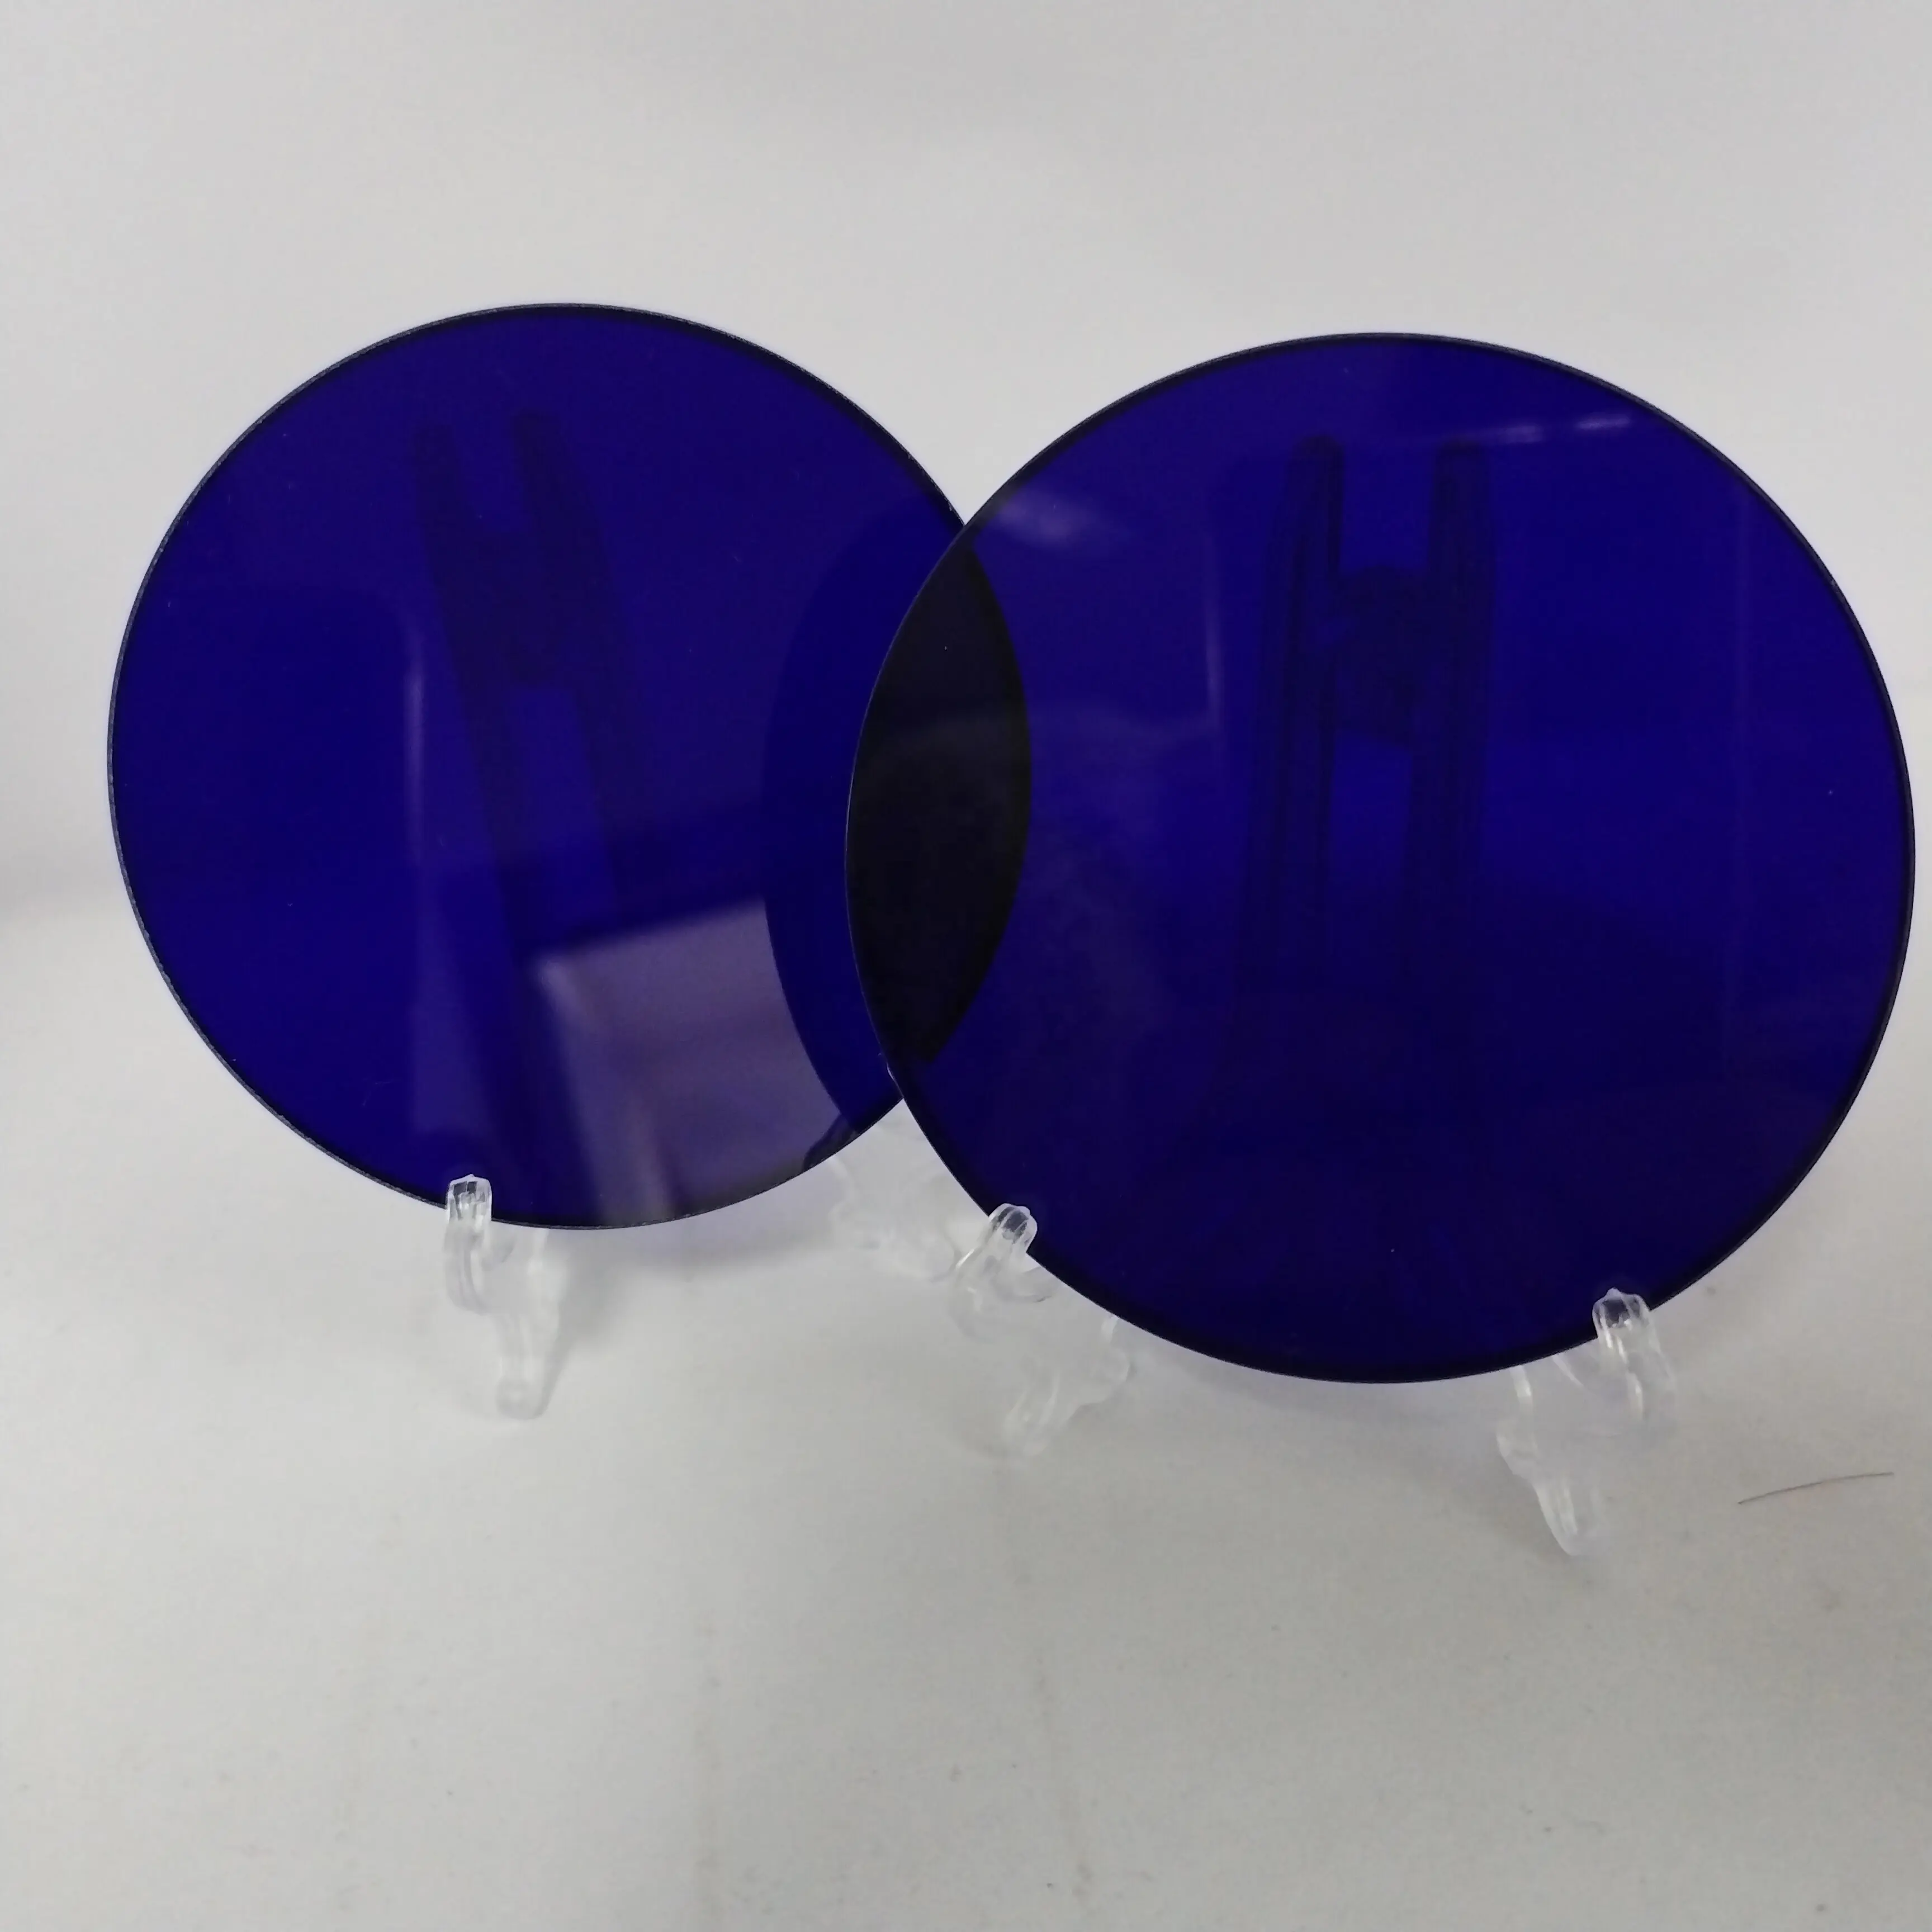 Lámina de vidrio azul cobalto Rectangular de alta calidad, filtro azul Qb24 óptica de interferencia, para observación de fuego